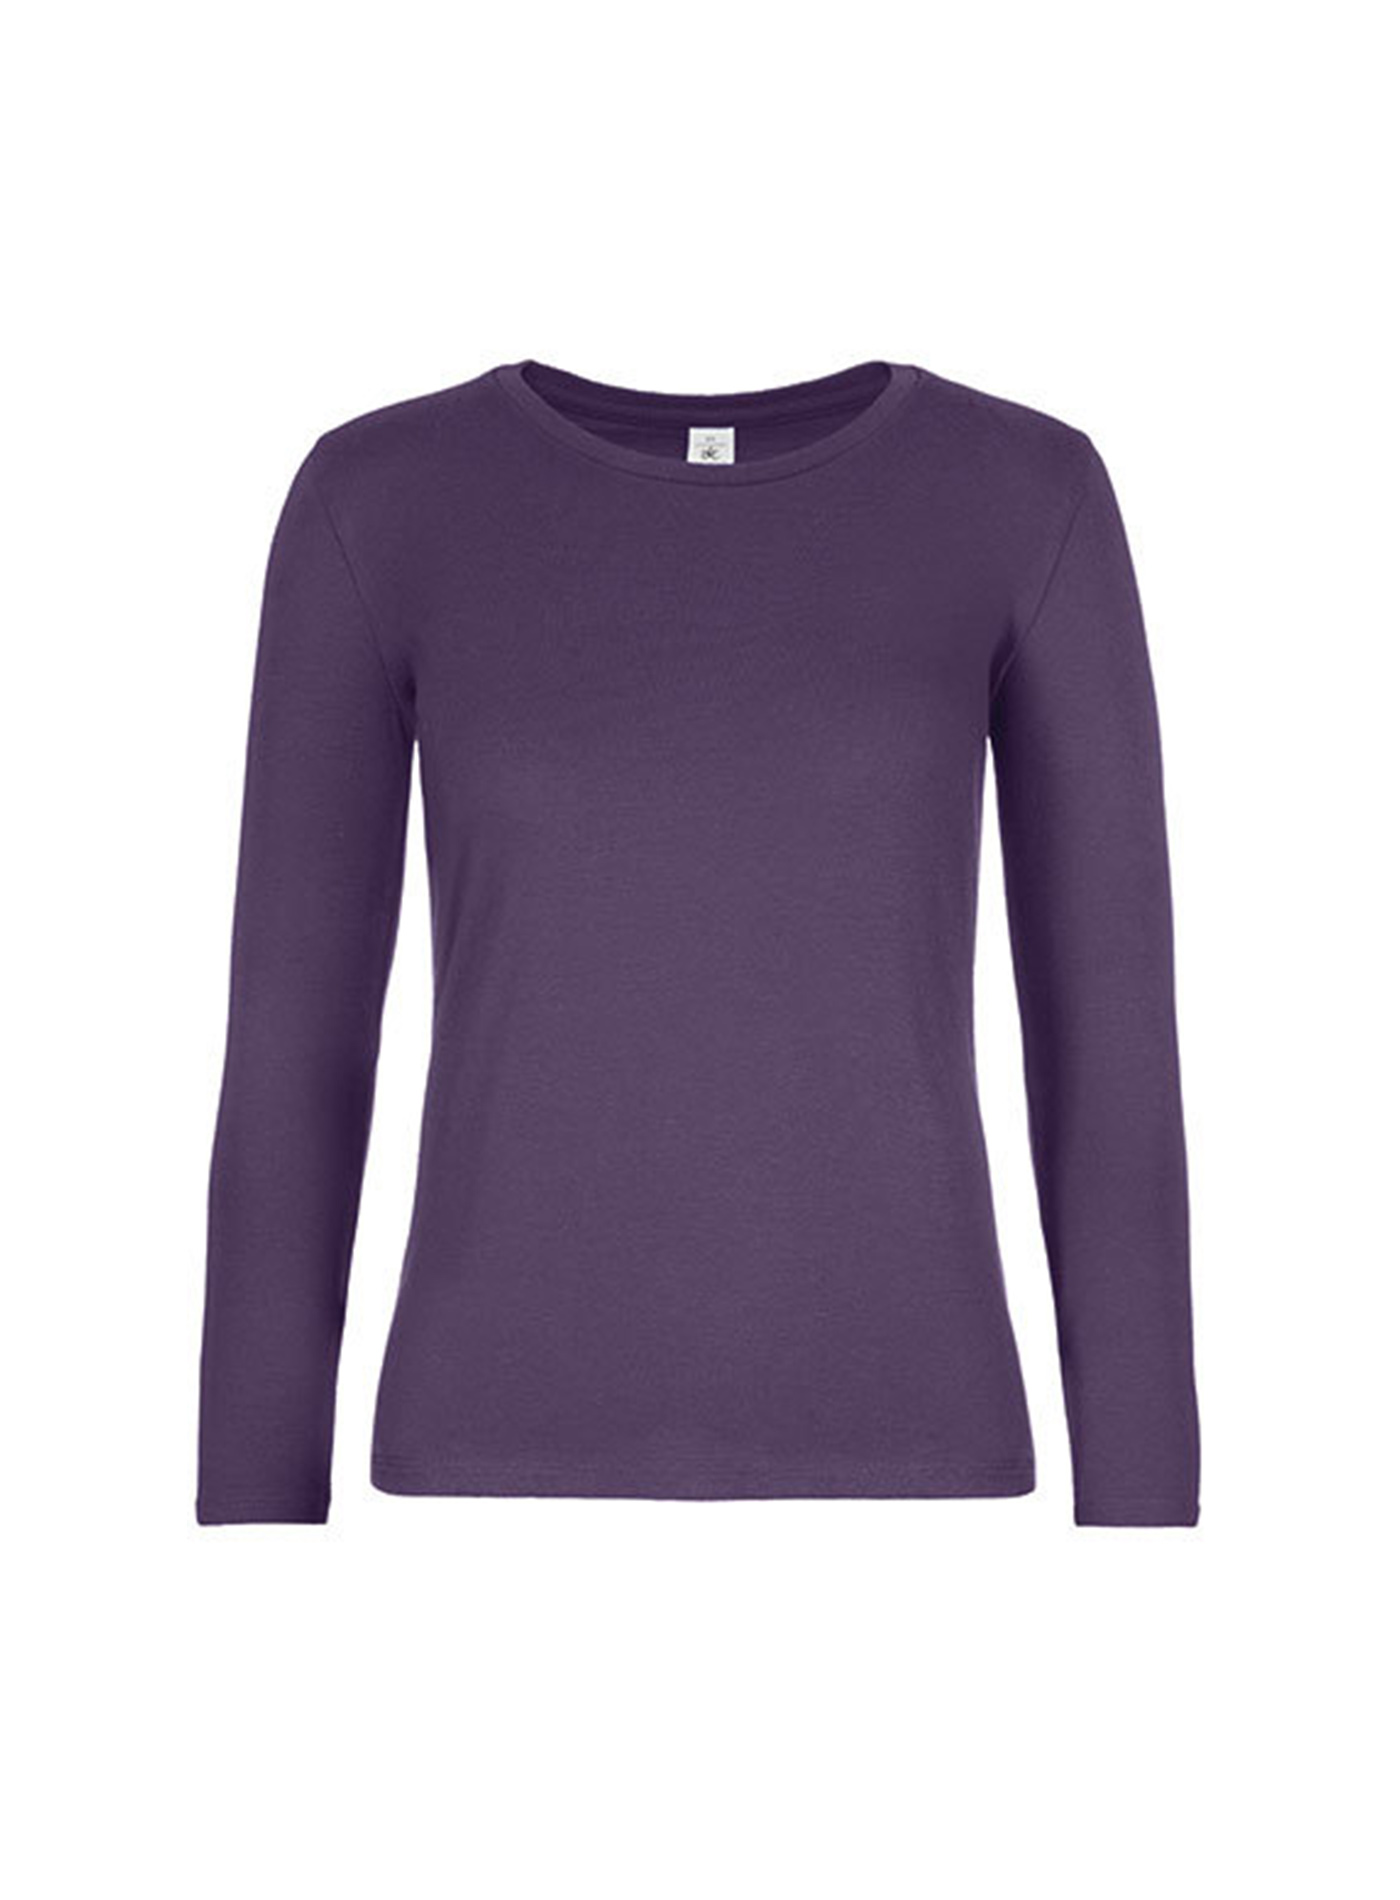 Dámské tričko s dlouhým rukávem B&C Collection - Tmavě fialová S